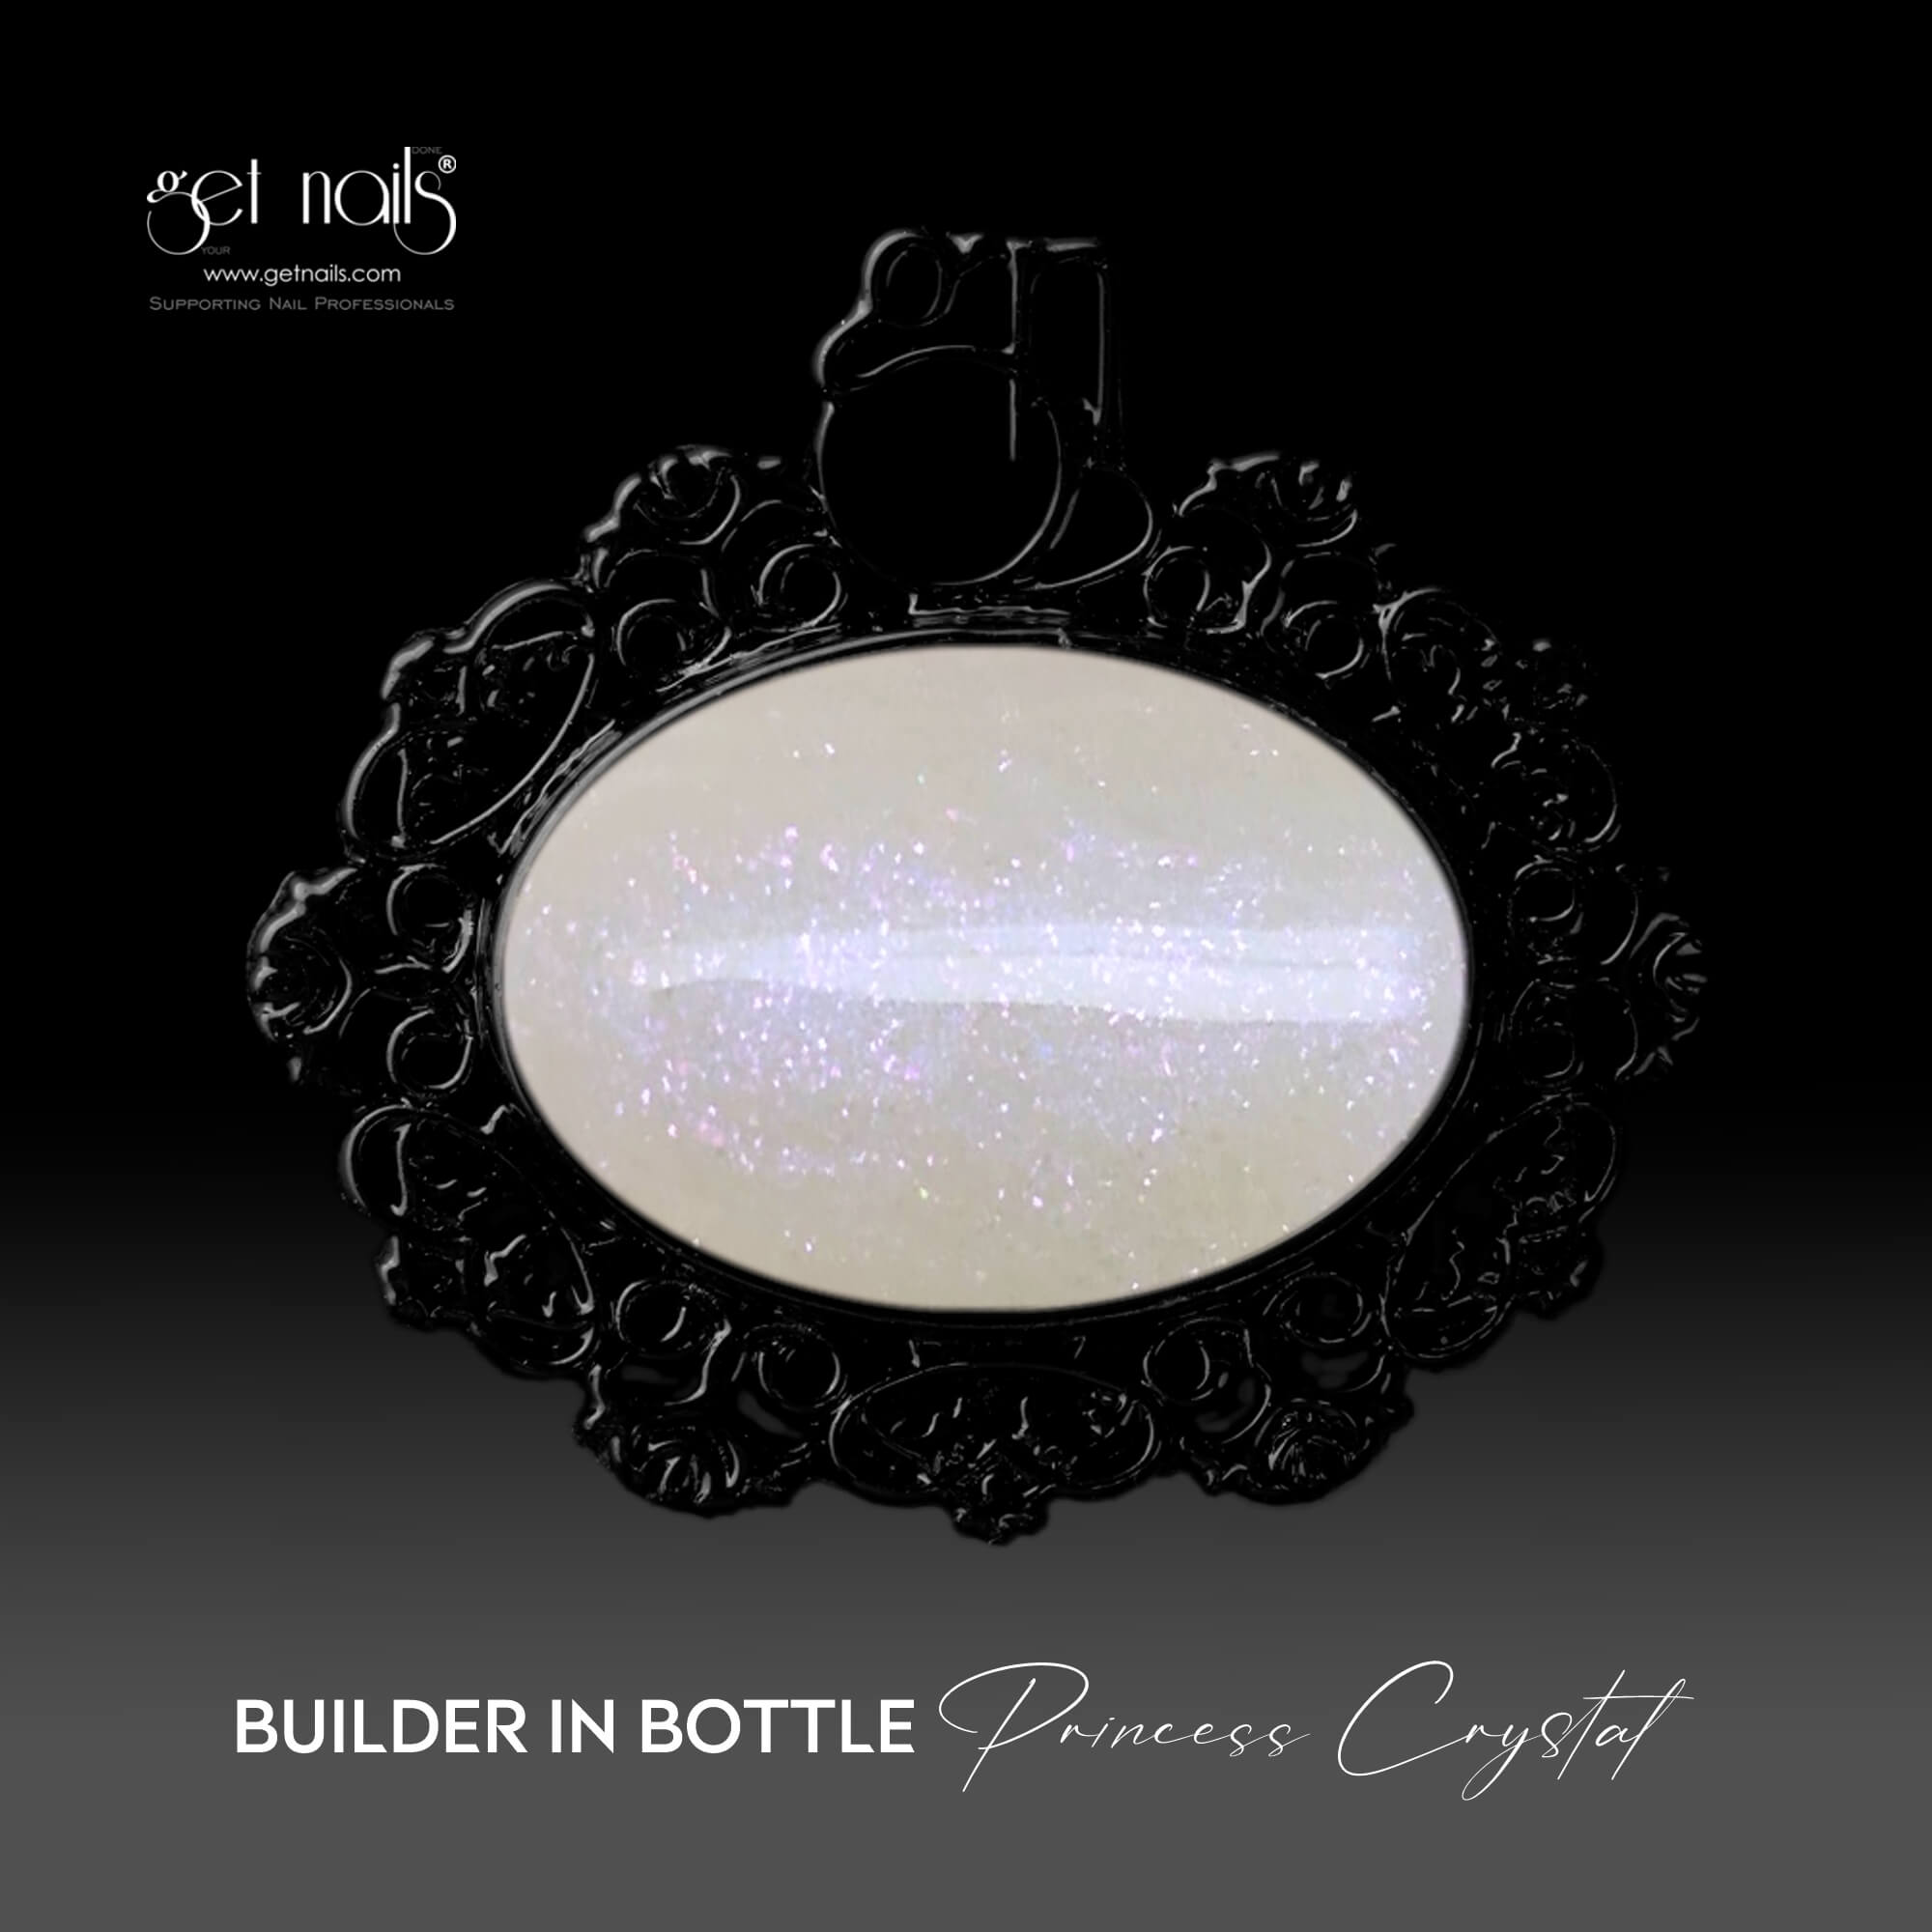 Get Nails Austria - Наращивание в бутылке Princess Crystal 15г